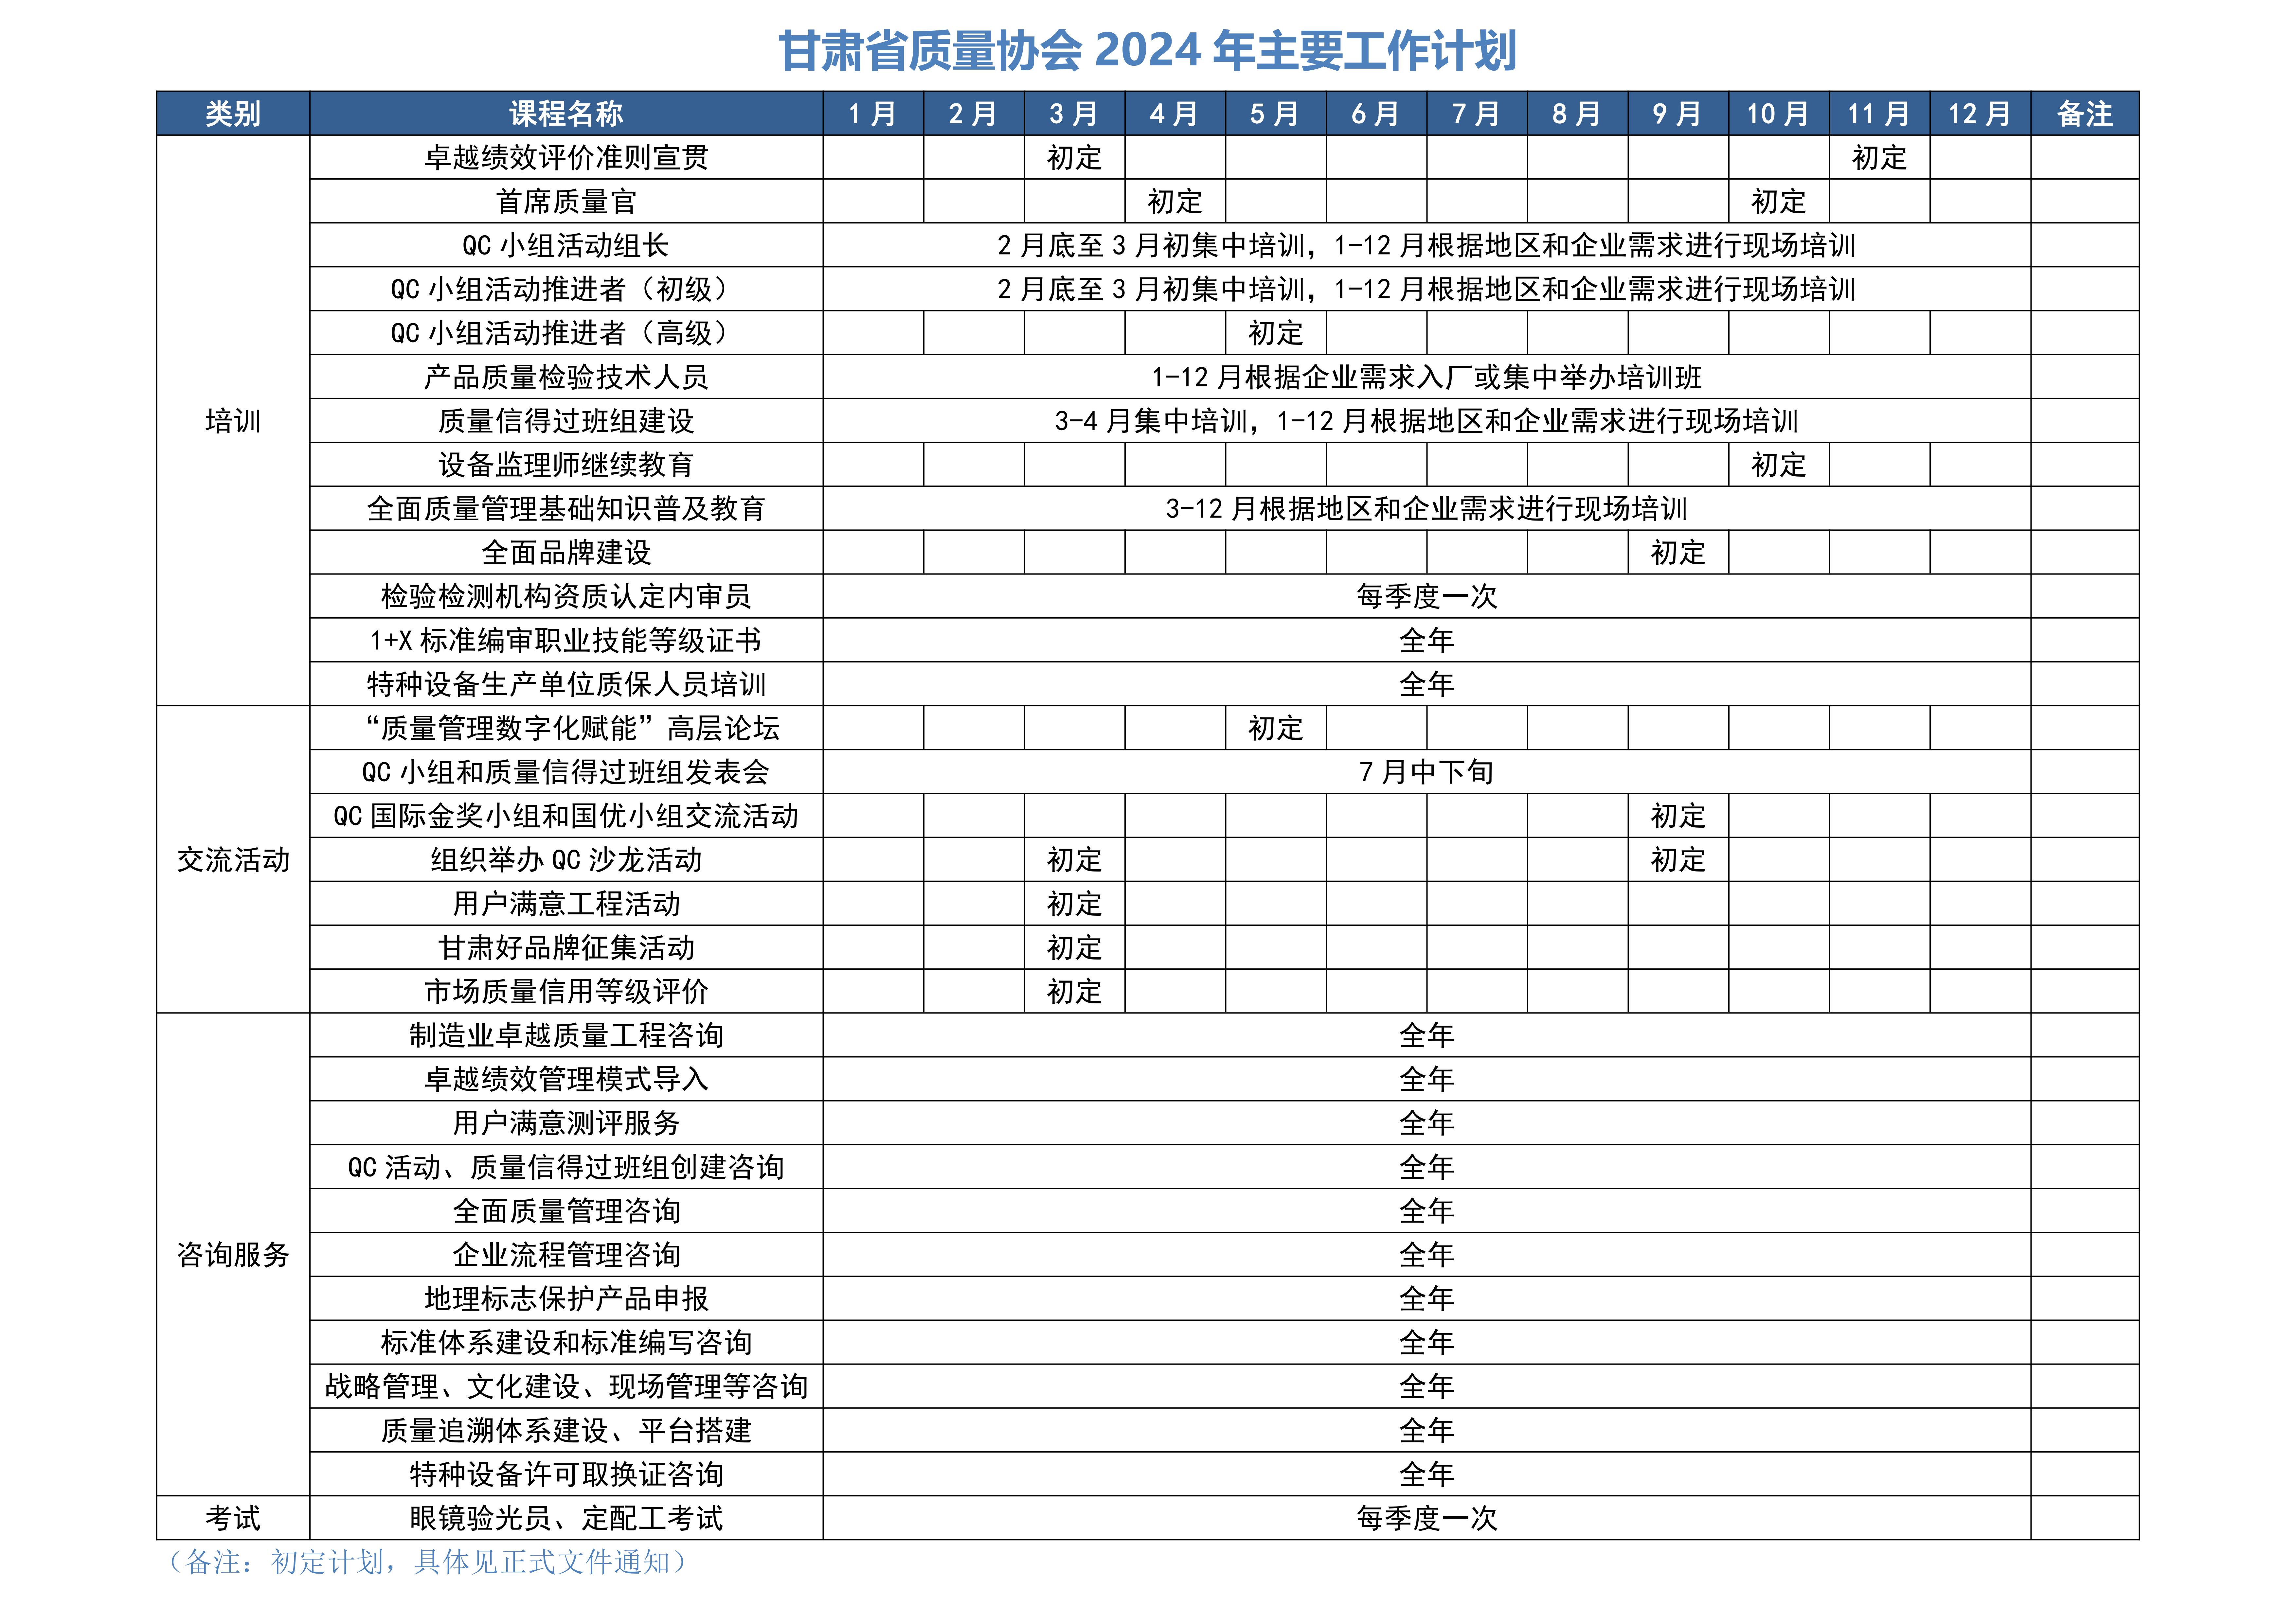 甘肃省质量协会2024年工作计划 （公开）(1)_00.jpg